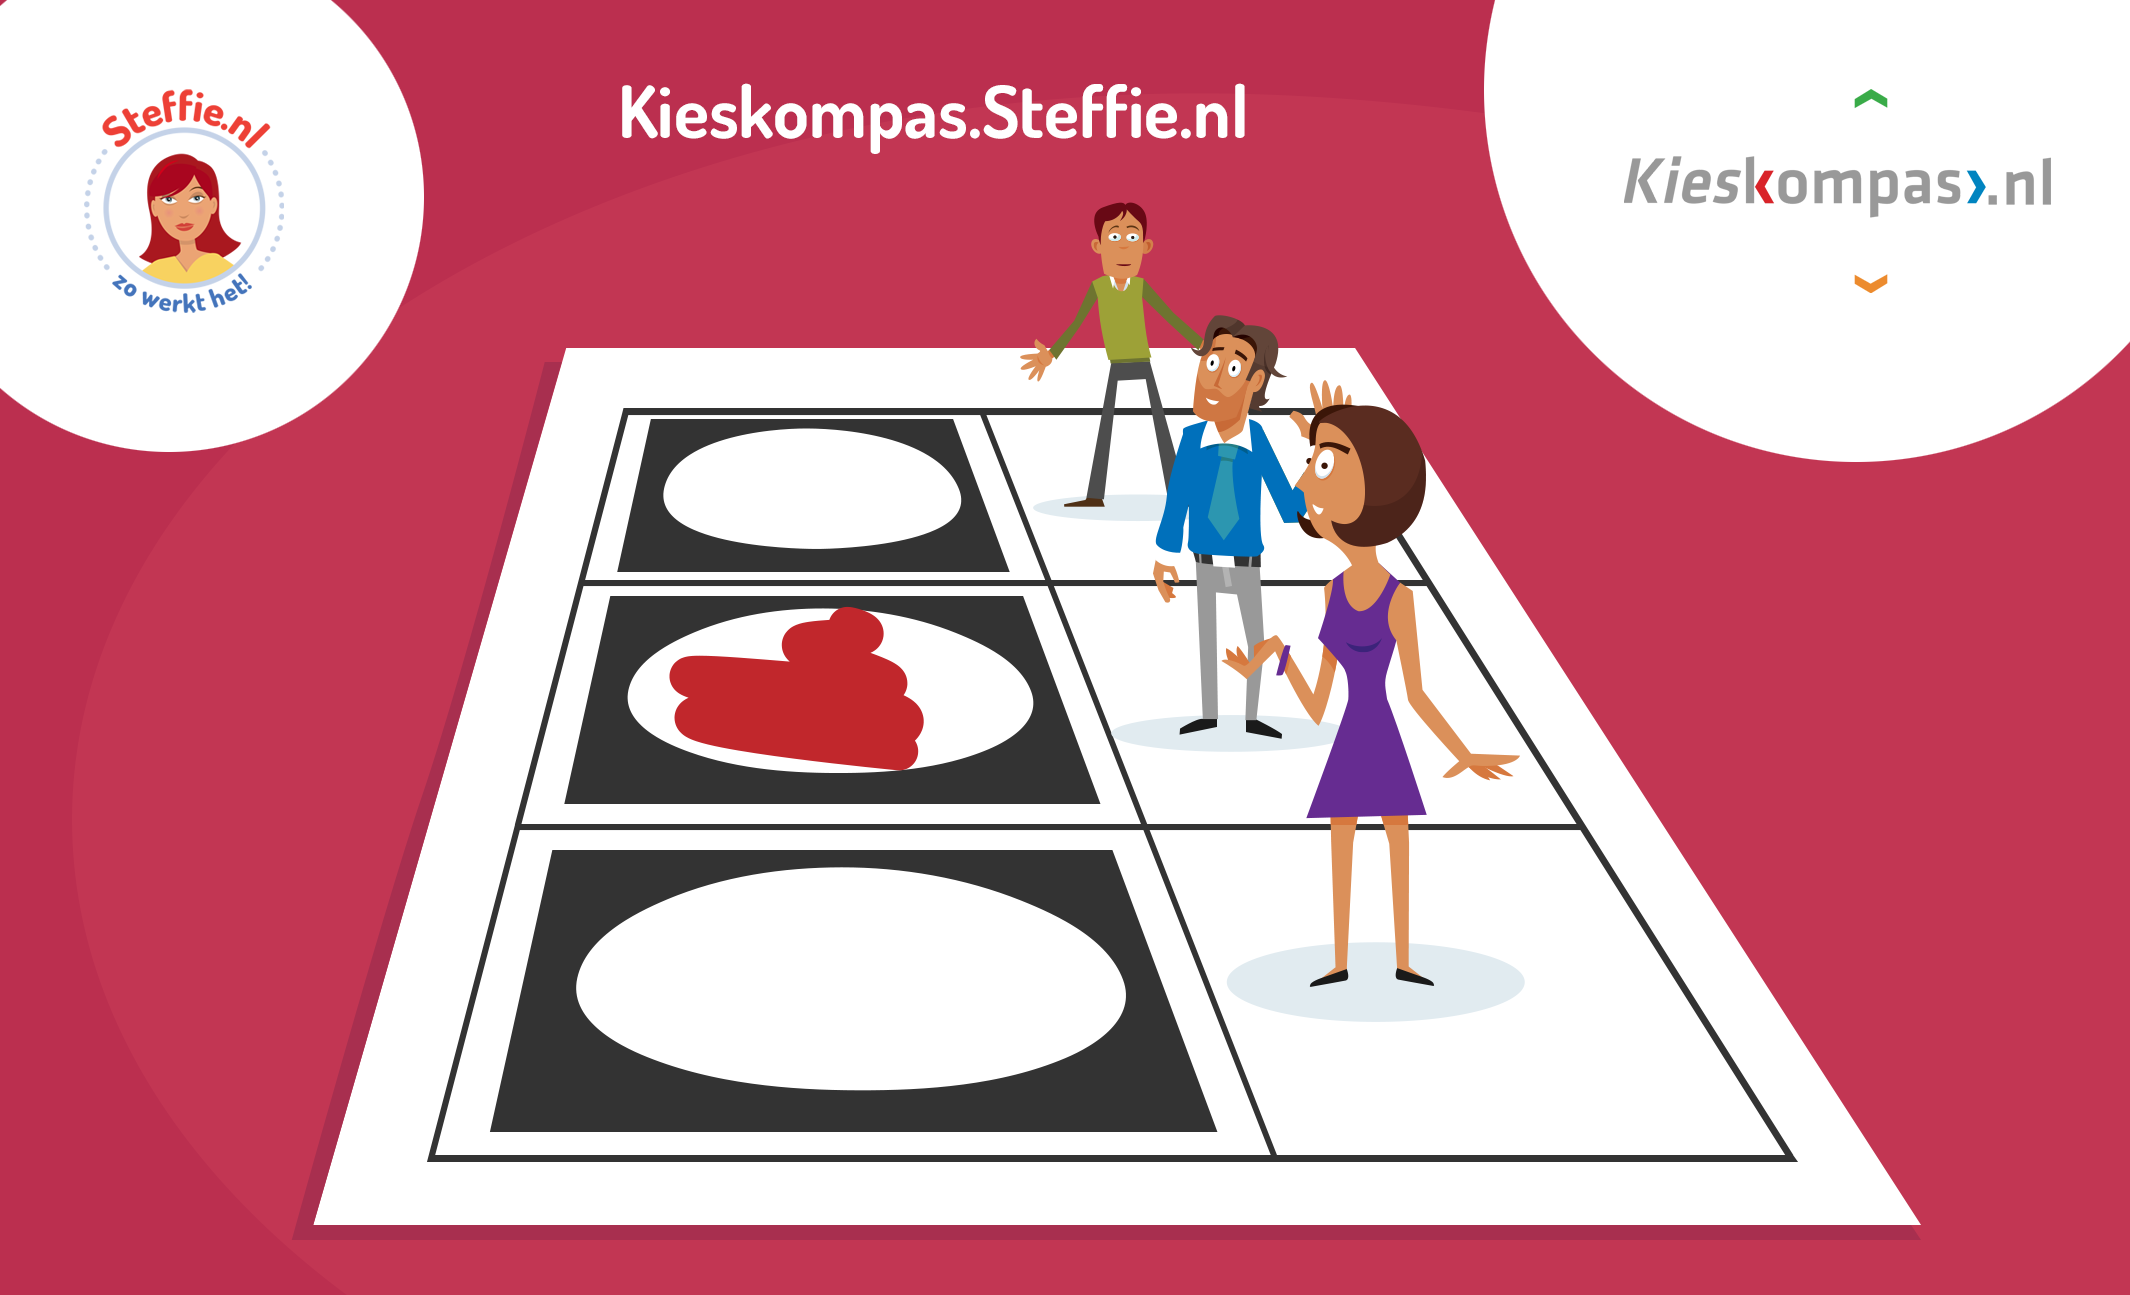 De gemeenteraadsverkiezingen in Noord-Holland en Brabant zijn begonnen. Steffie helpt om een keuze te maken met Kieskompas.Steffie.nl.